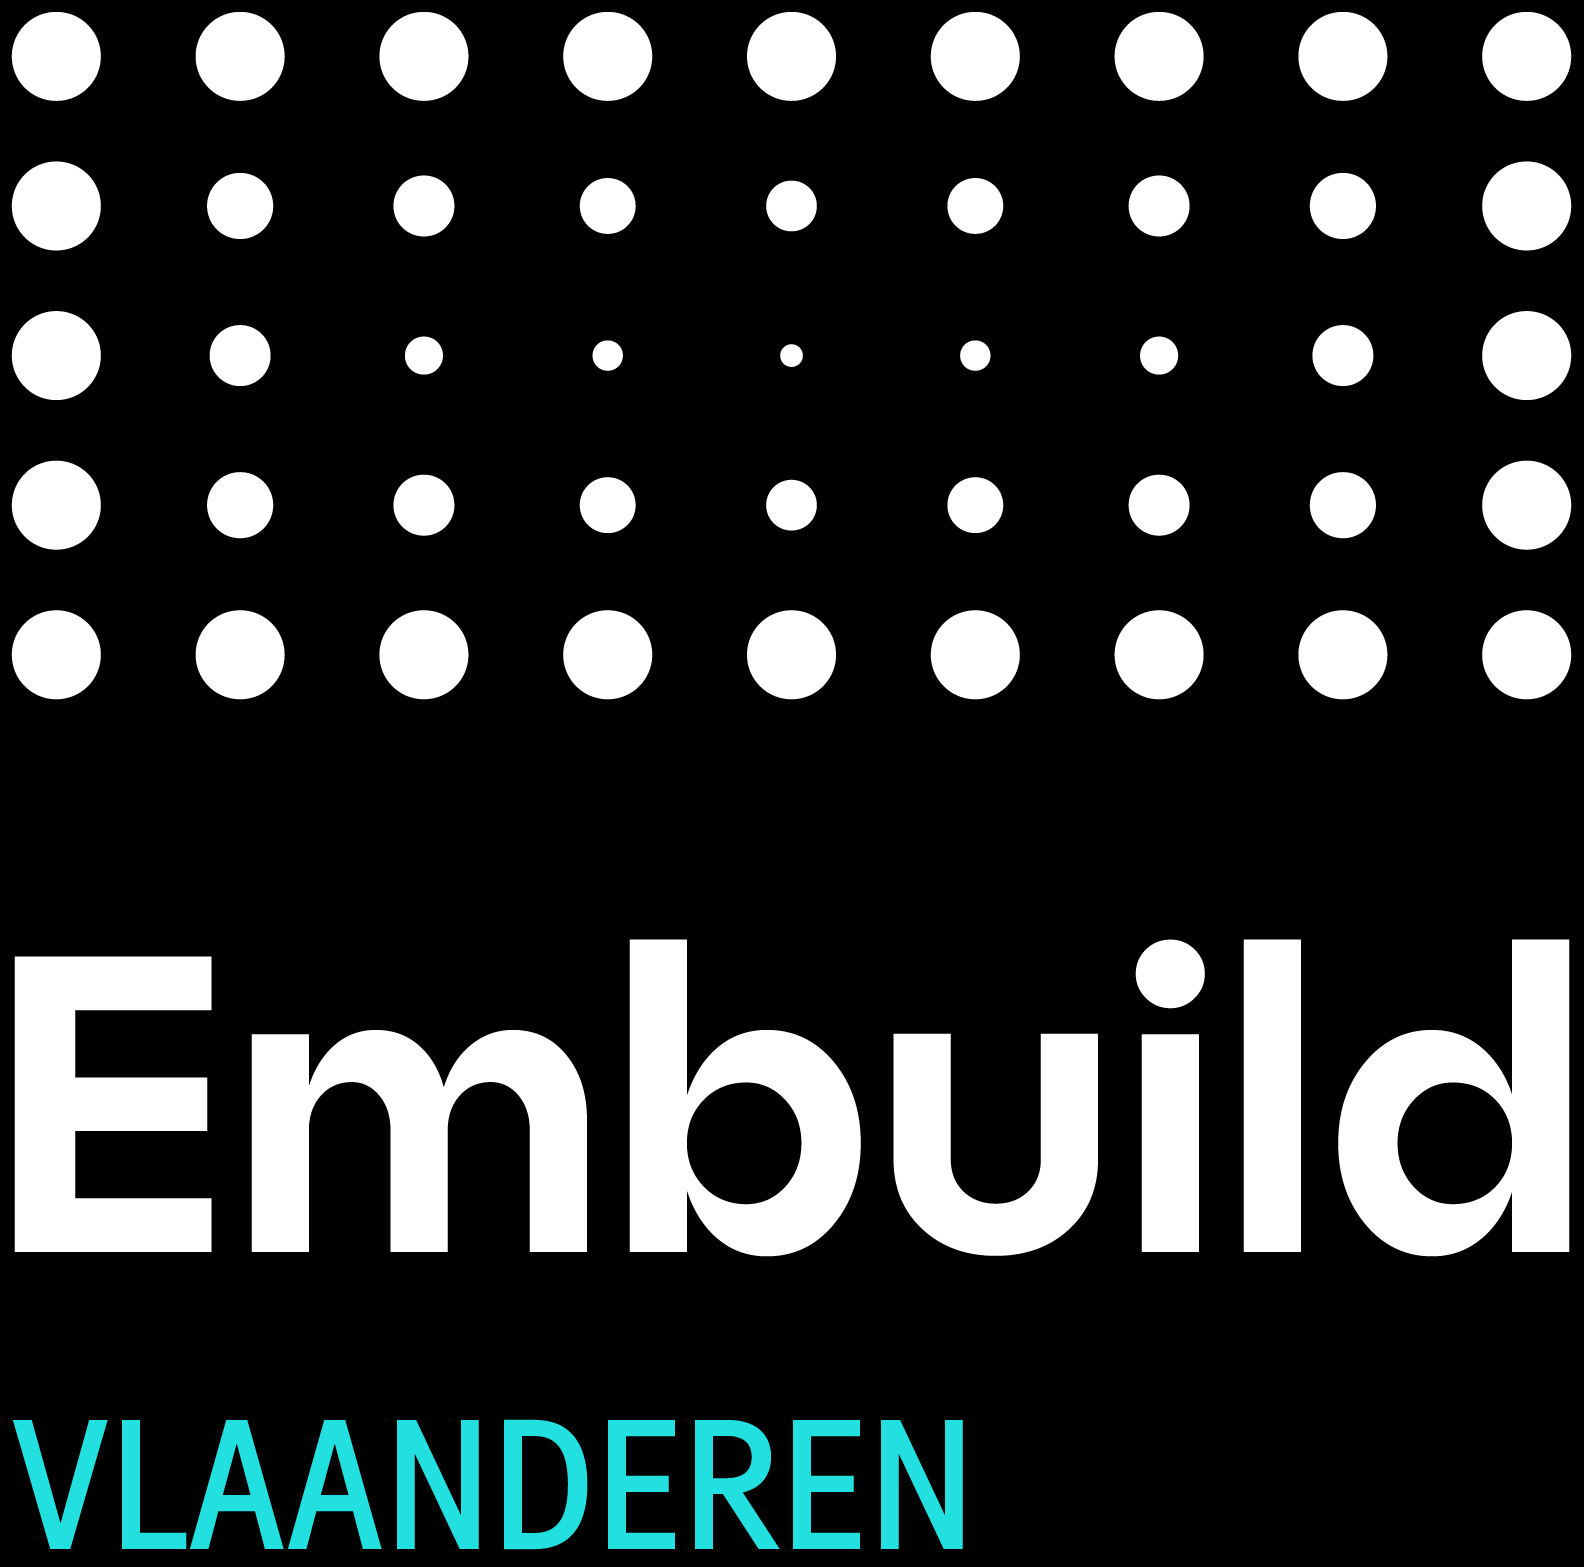 Embuild Vlaanderen